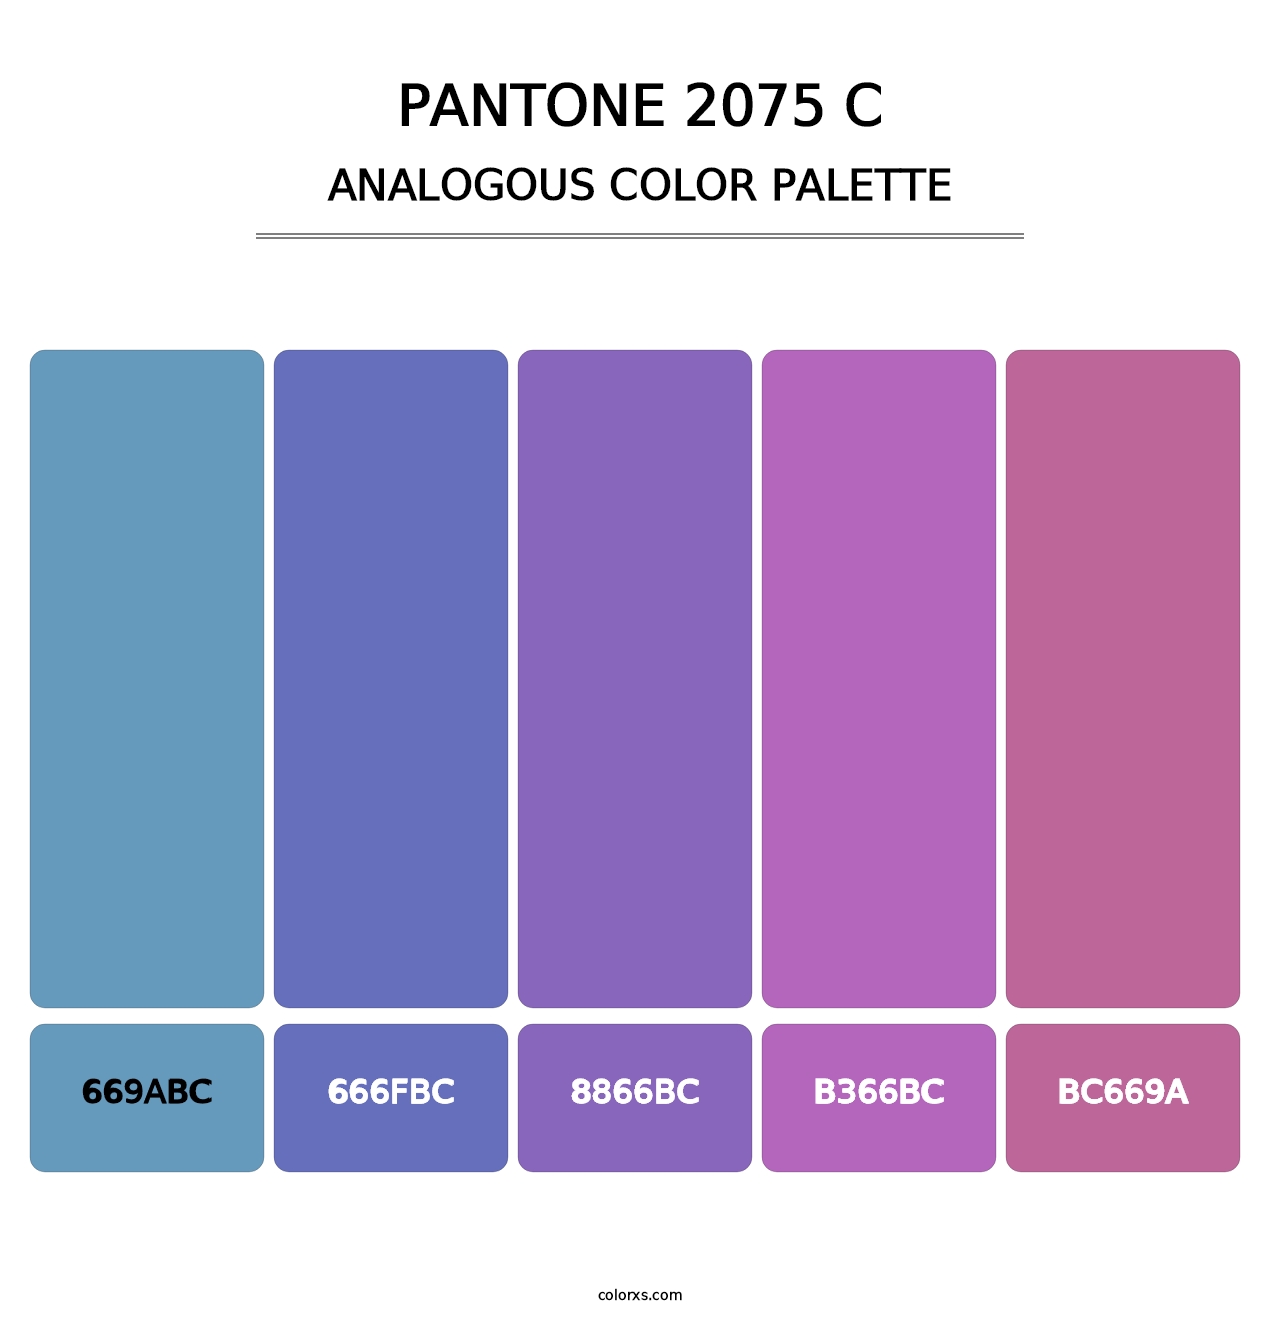 PANTONE 2075 C - Analogous Color Palette